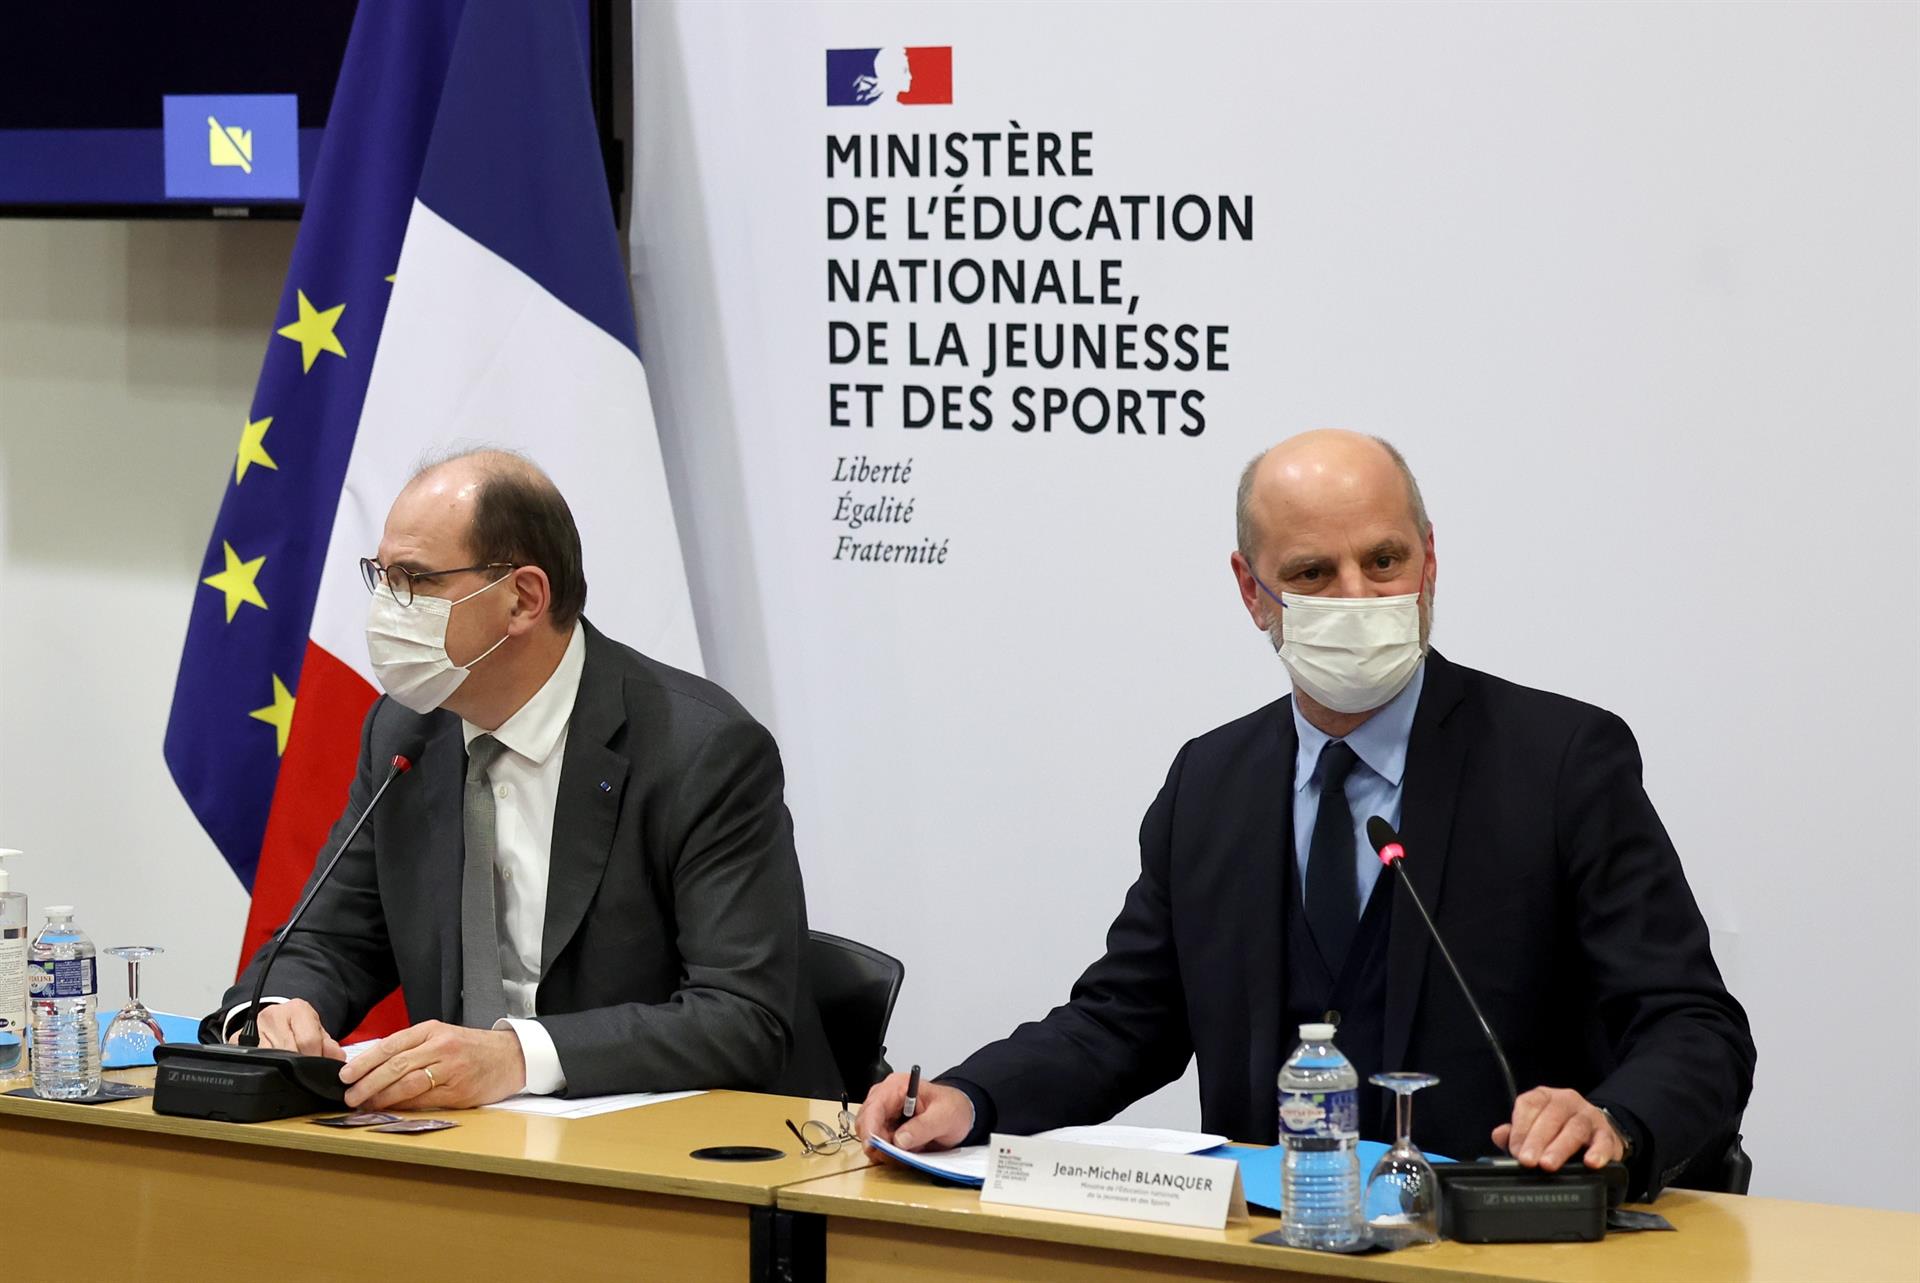 El ministre d'educació, Jean-Michel Blanquer, amb el primer ministre Jean Castex